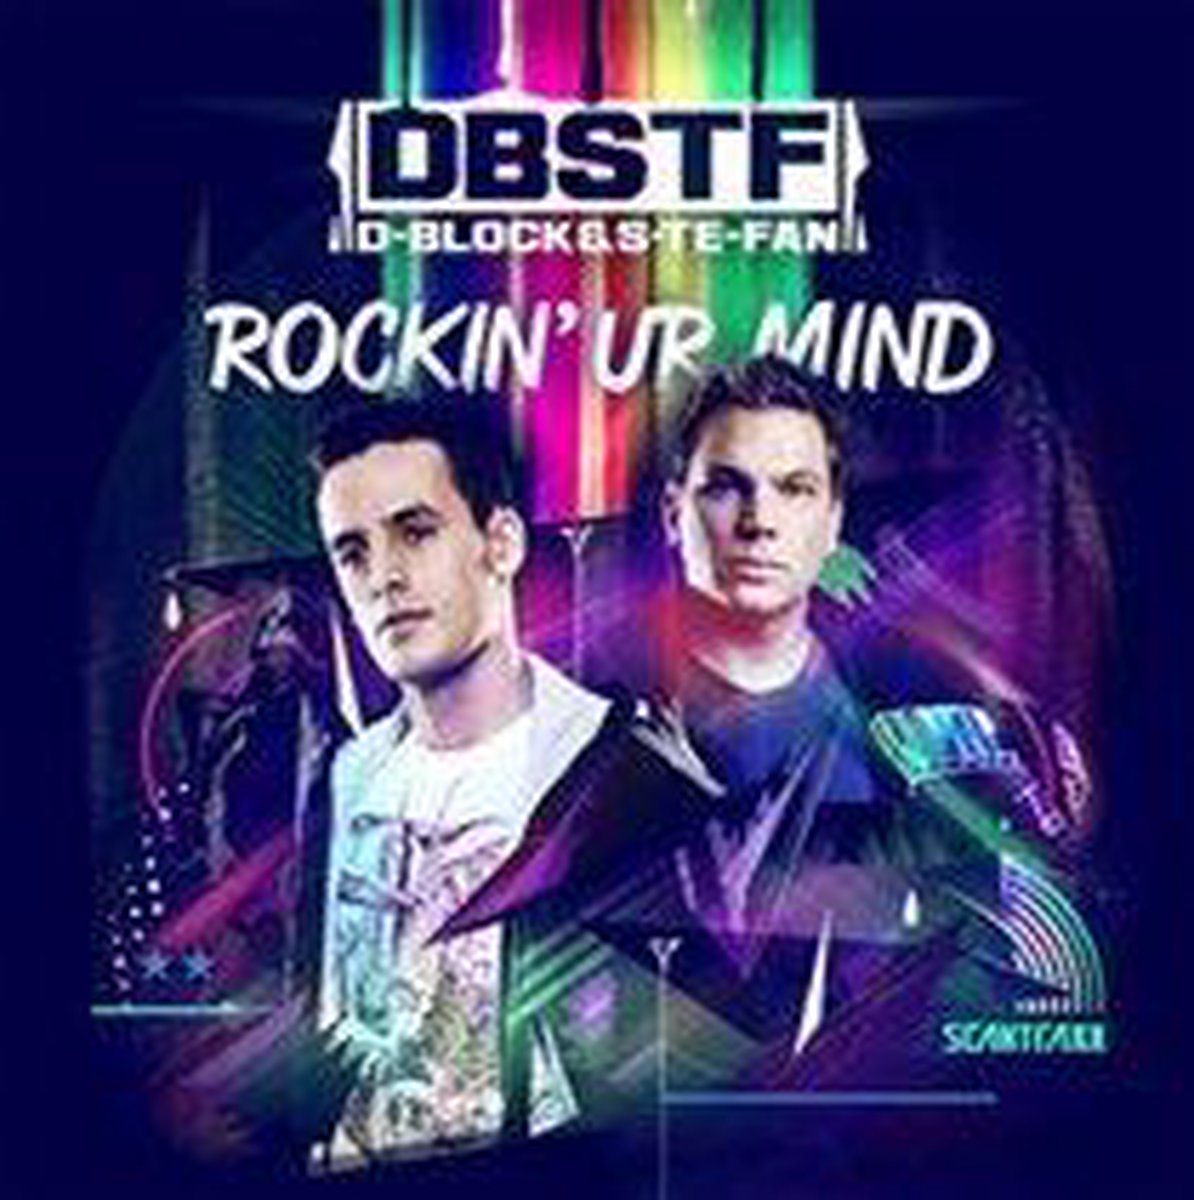 Rockin' Ur Mind - D-Block & S-Te-Fan